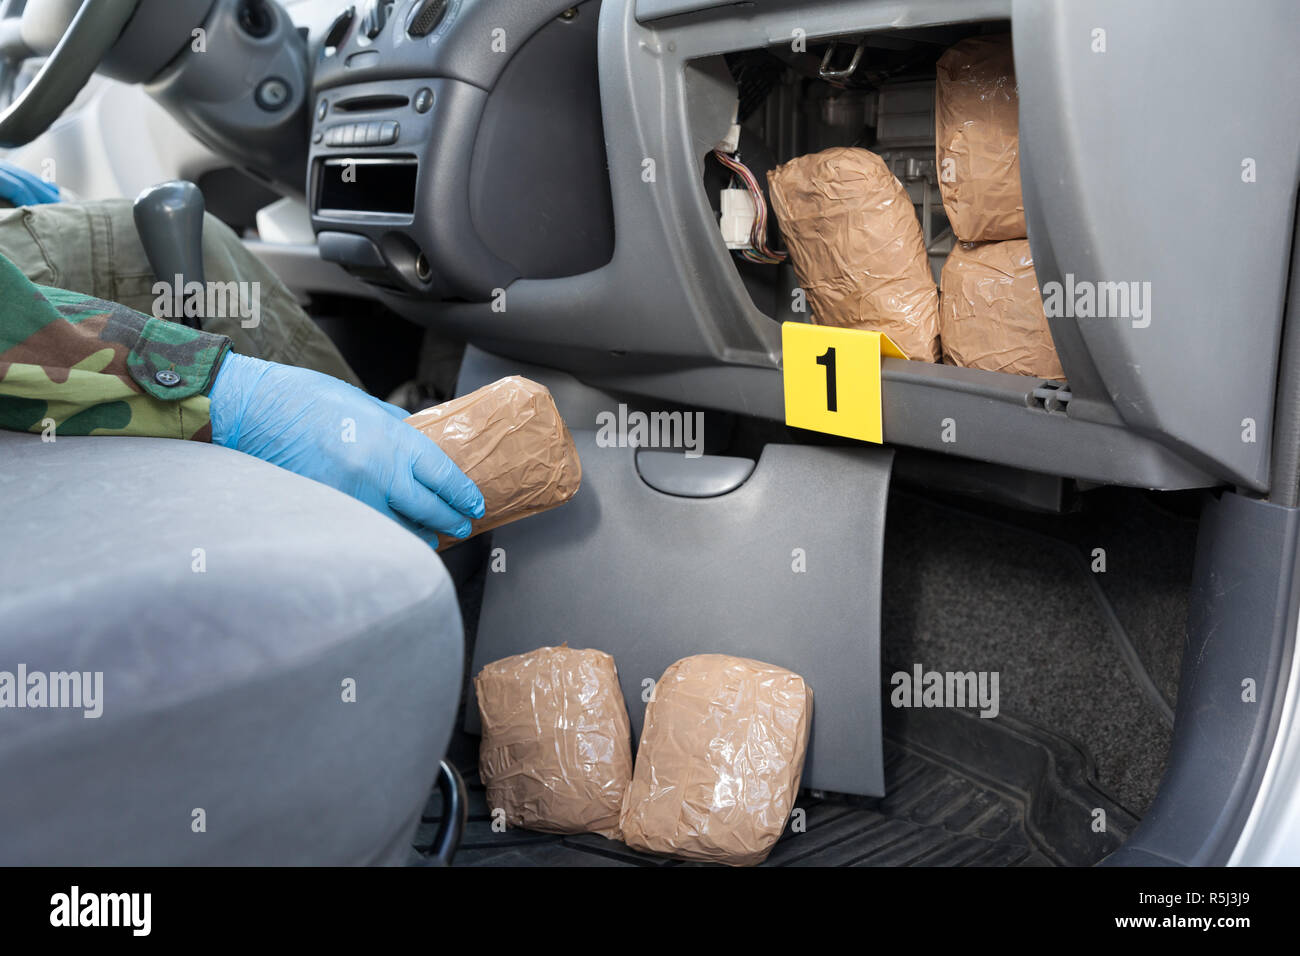 Polizeioffizier holding Droge Paket im Geheimfach in einem Auto gefunden Stockfoto